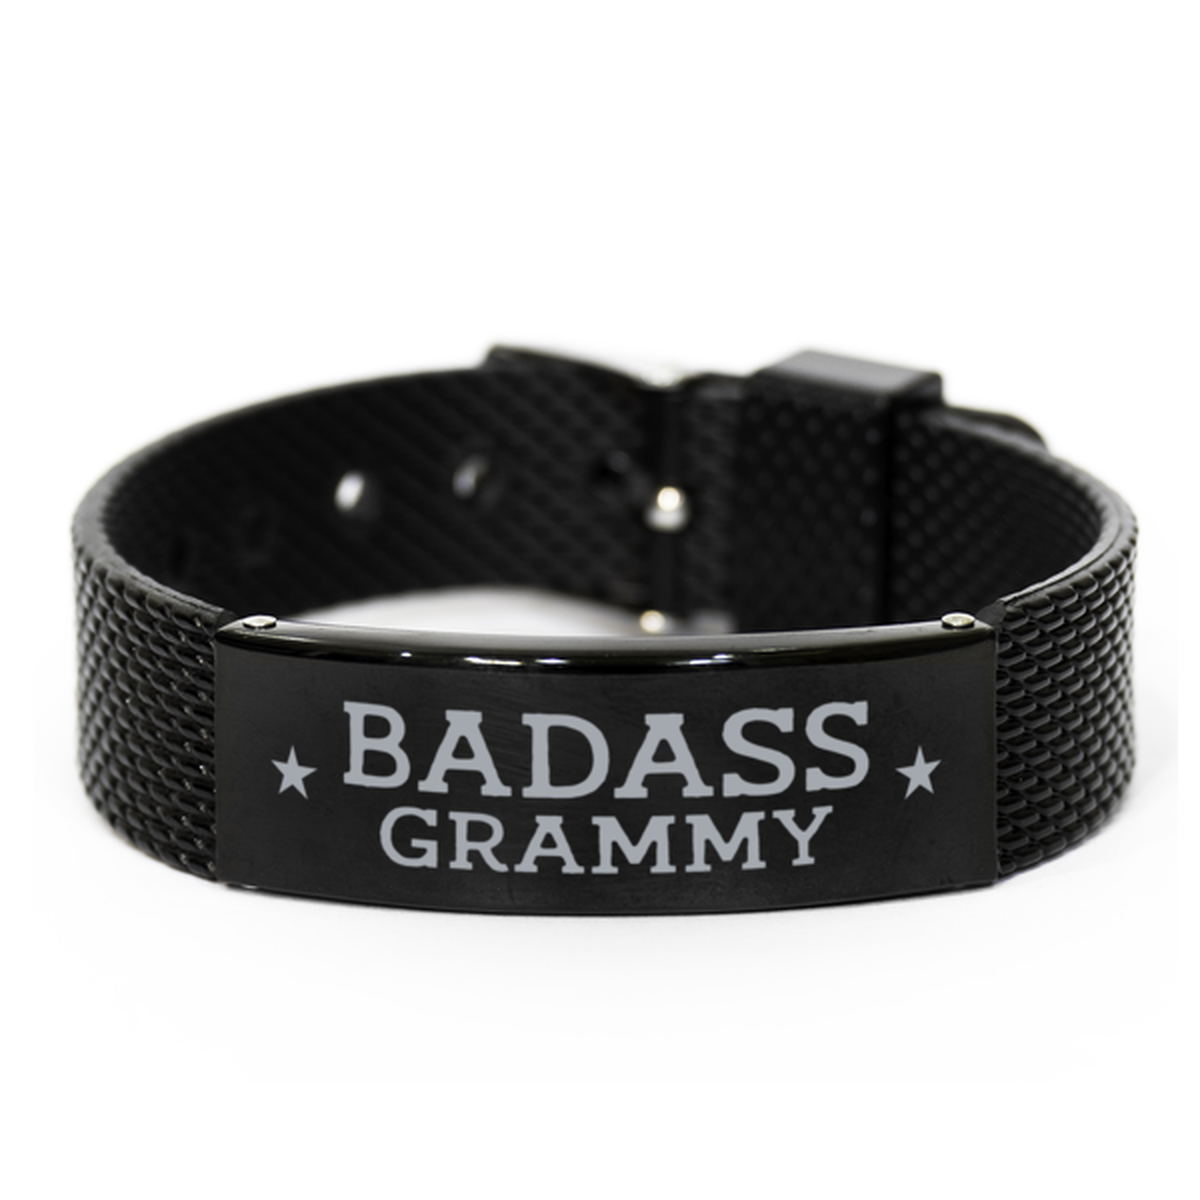 Grammy Black Shark Mesh Bracelet, Badass Grammy, Funny Family Gifts For Grammy From Granddaughter Grandson